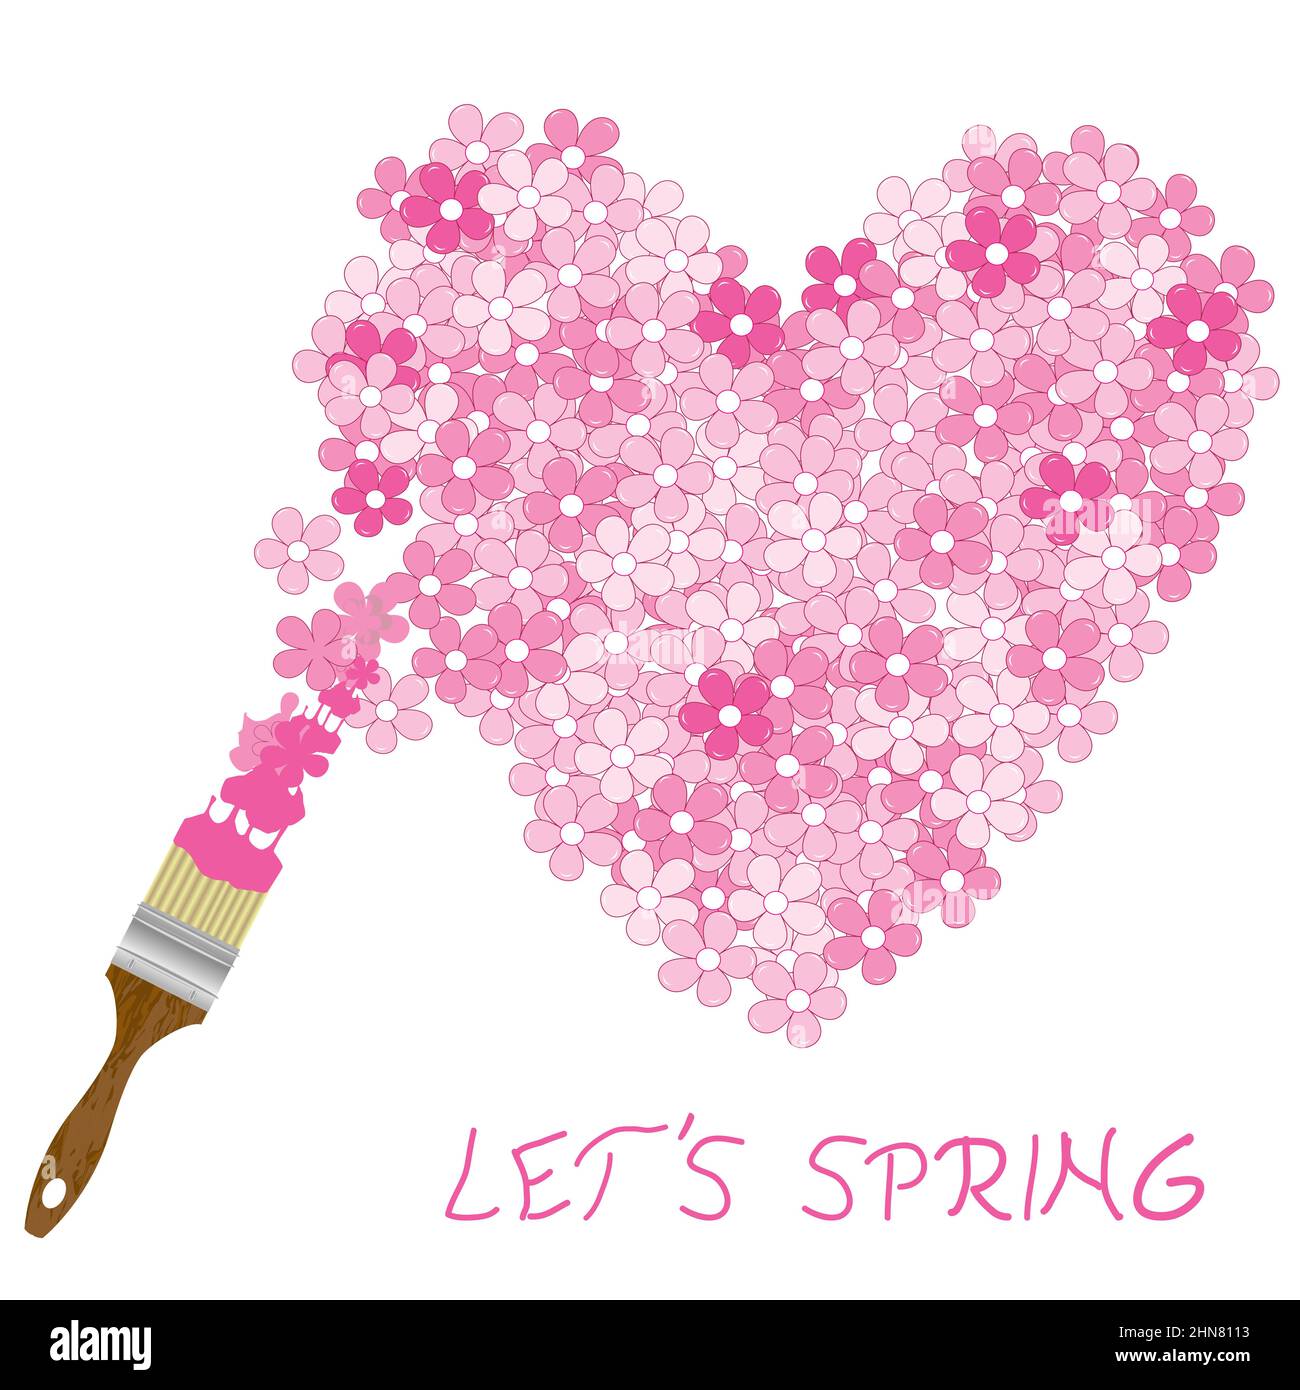 Spring concept avec pinceau peint des fleurs de cerisier en forme de coeur Illustration de Vecteur